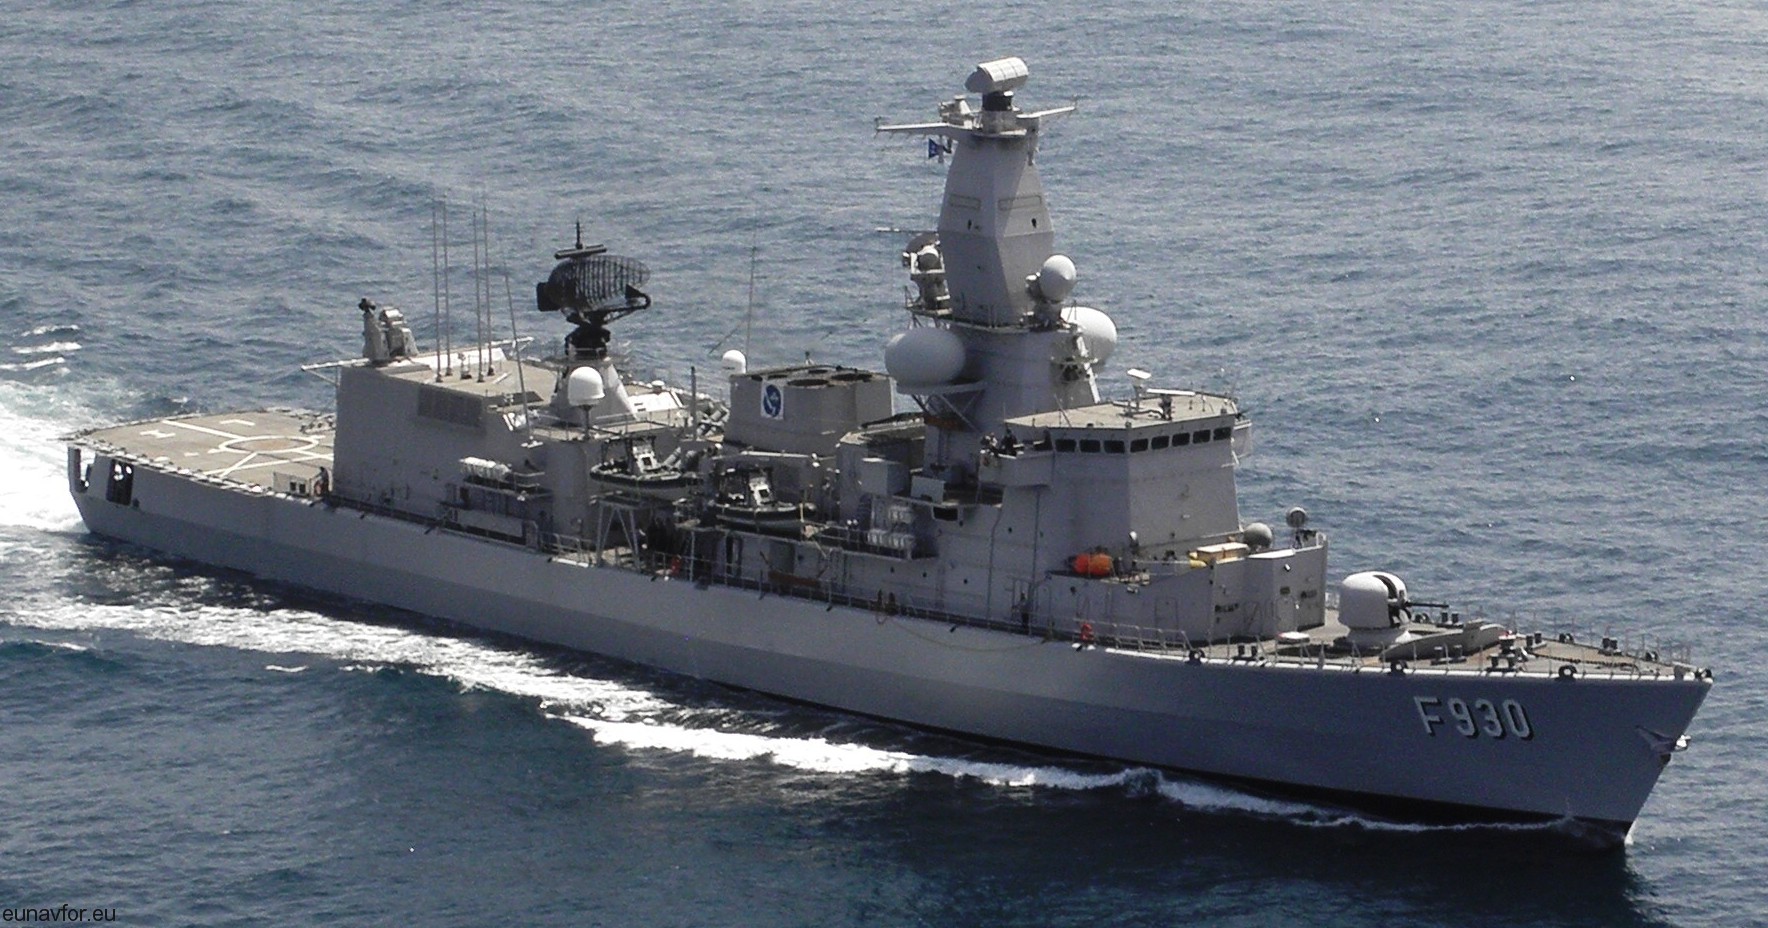 f-930 bns leopold i frigate belgian navy karel doorman class 09 eunavfor